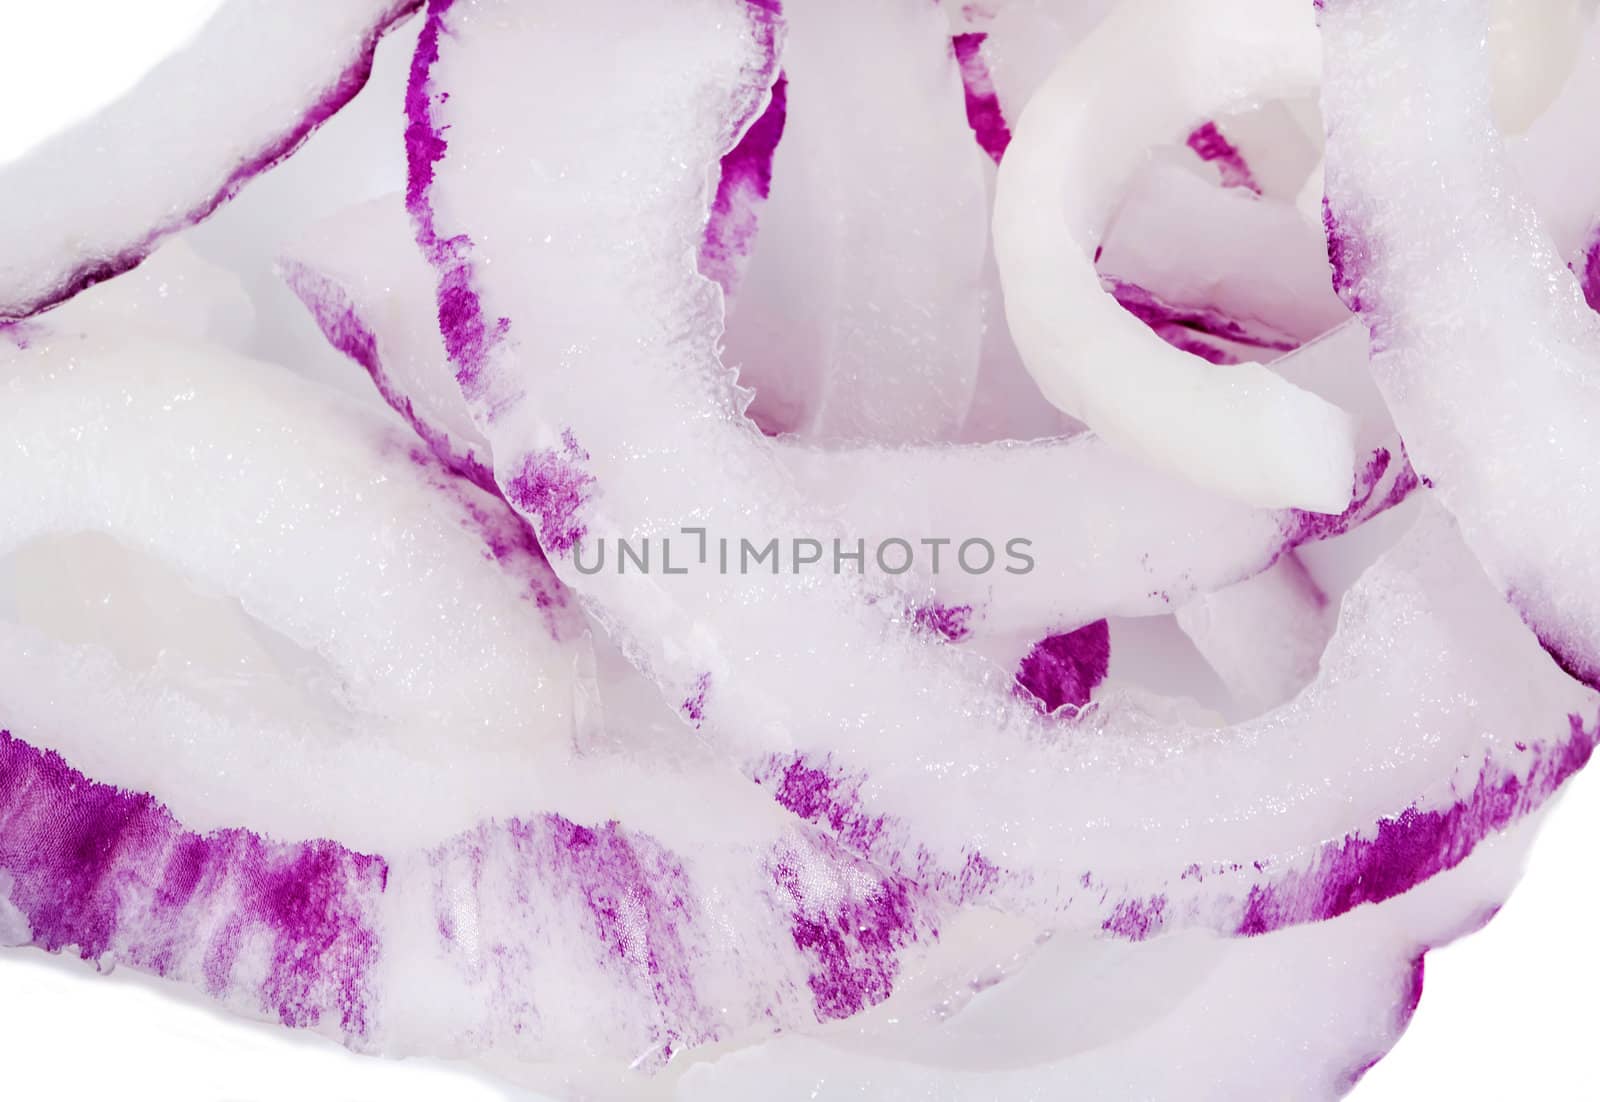 Violet onion slices close view